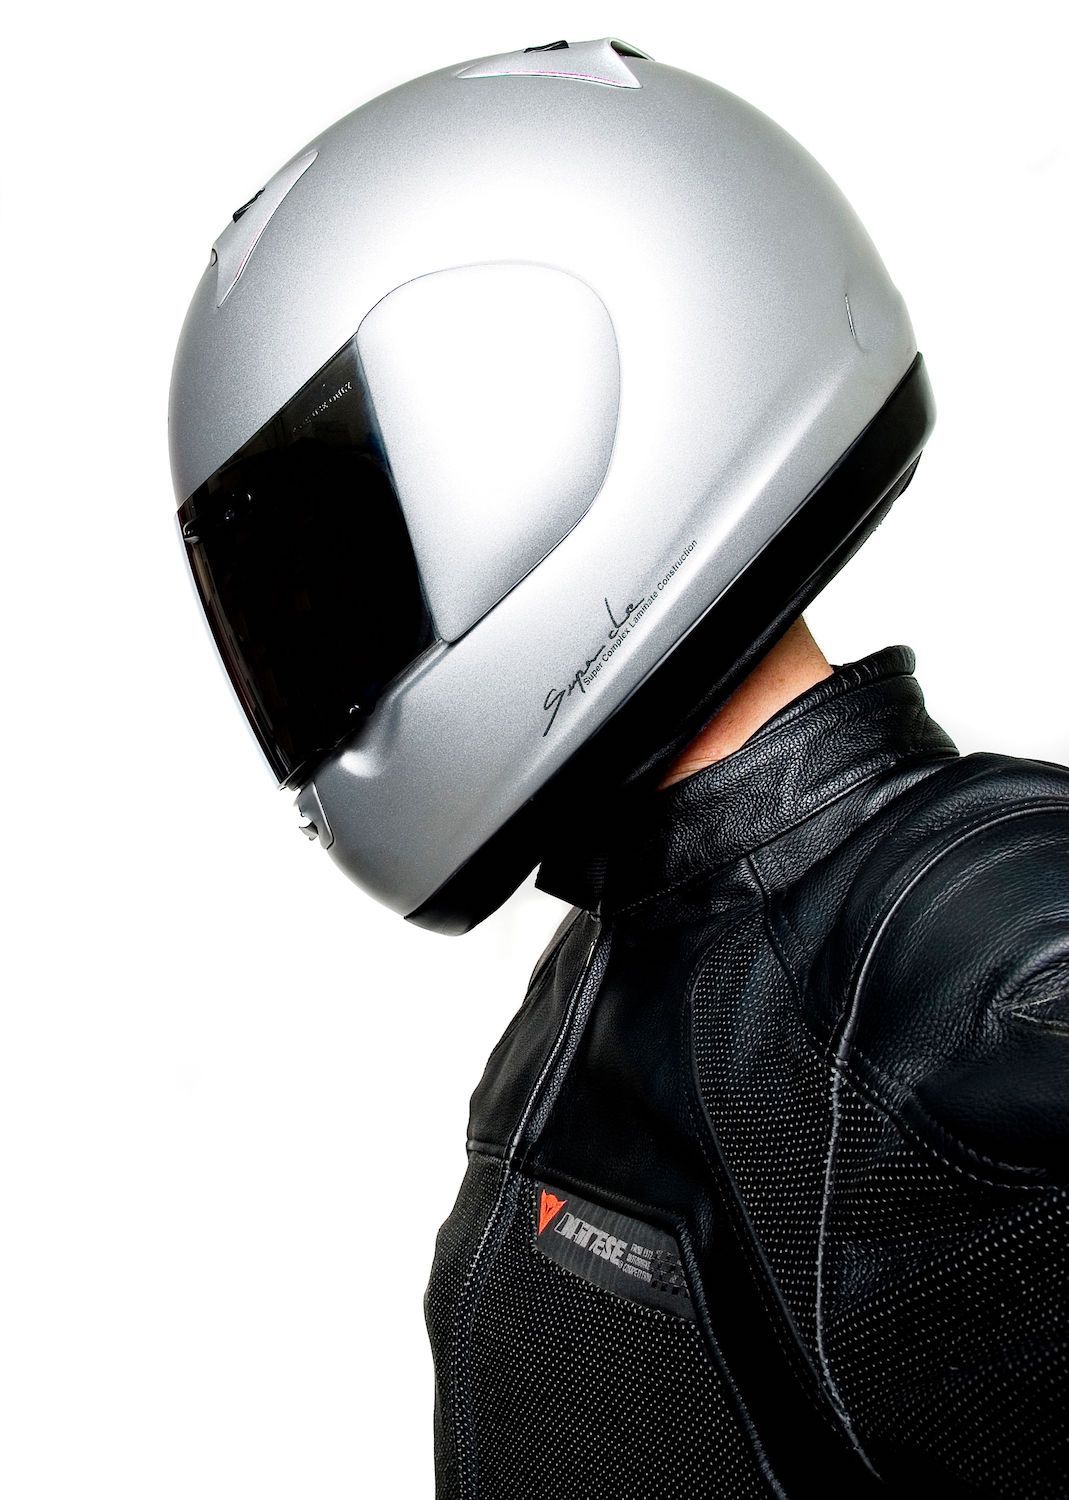 helmet(for8x10frame).jpg